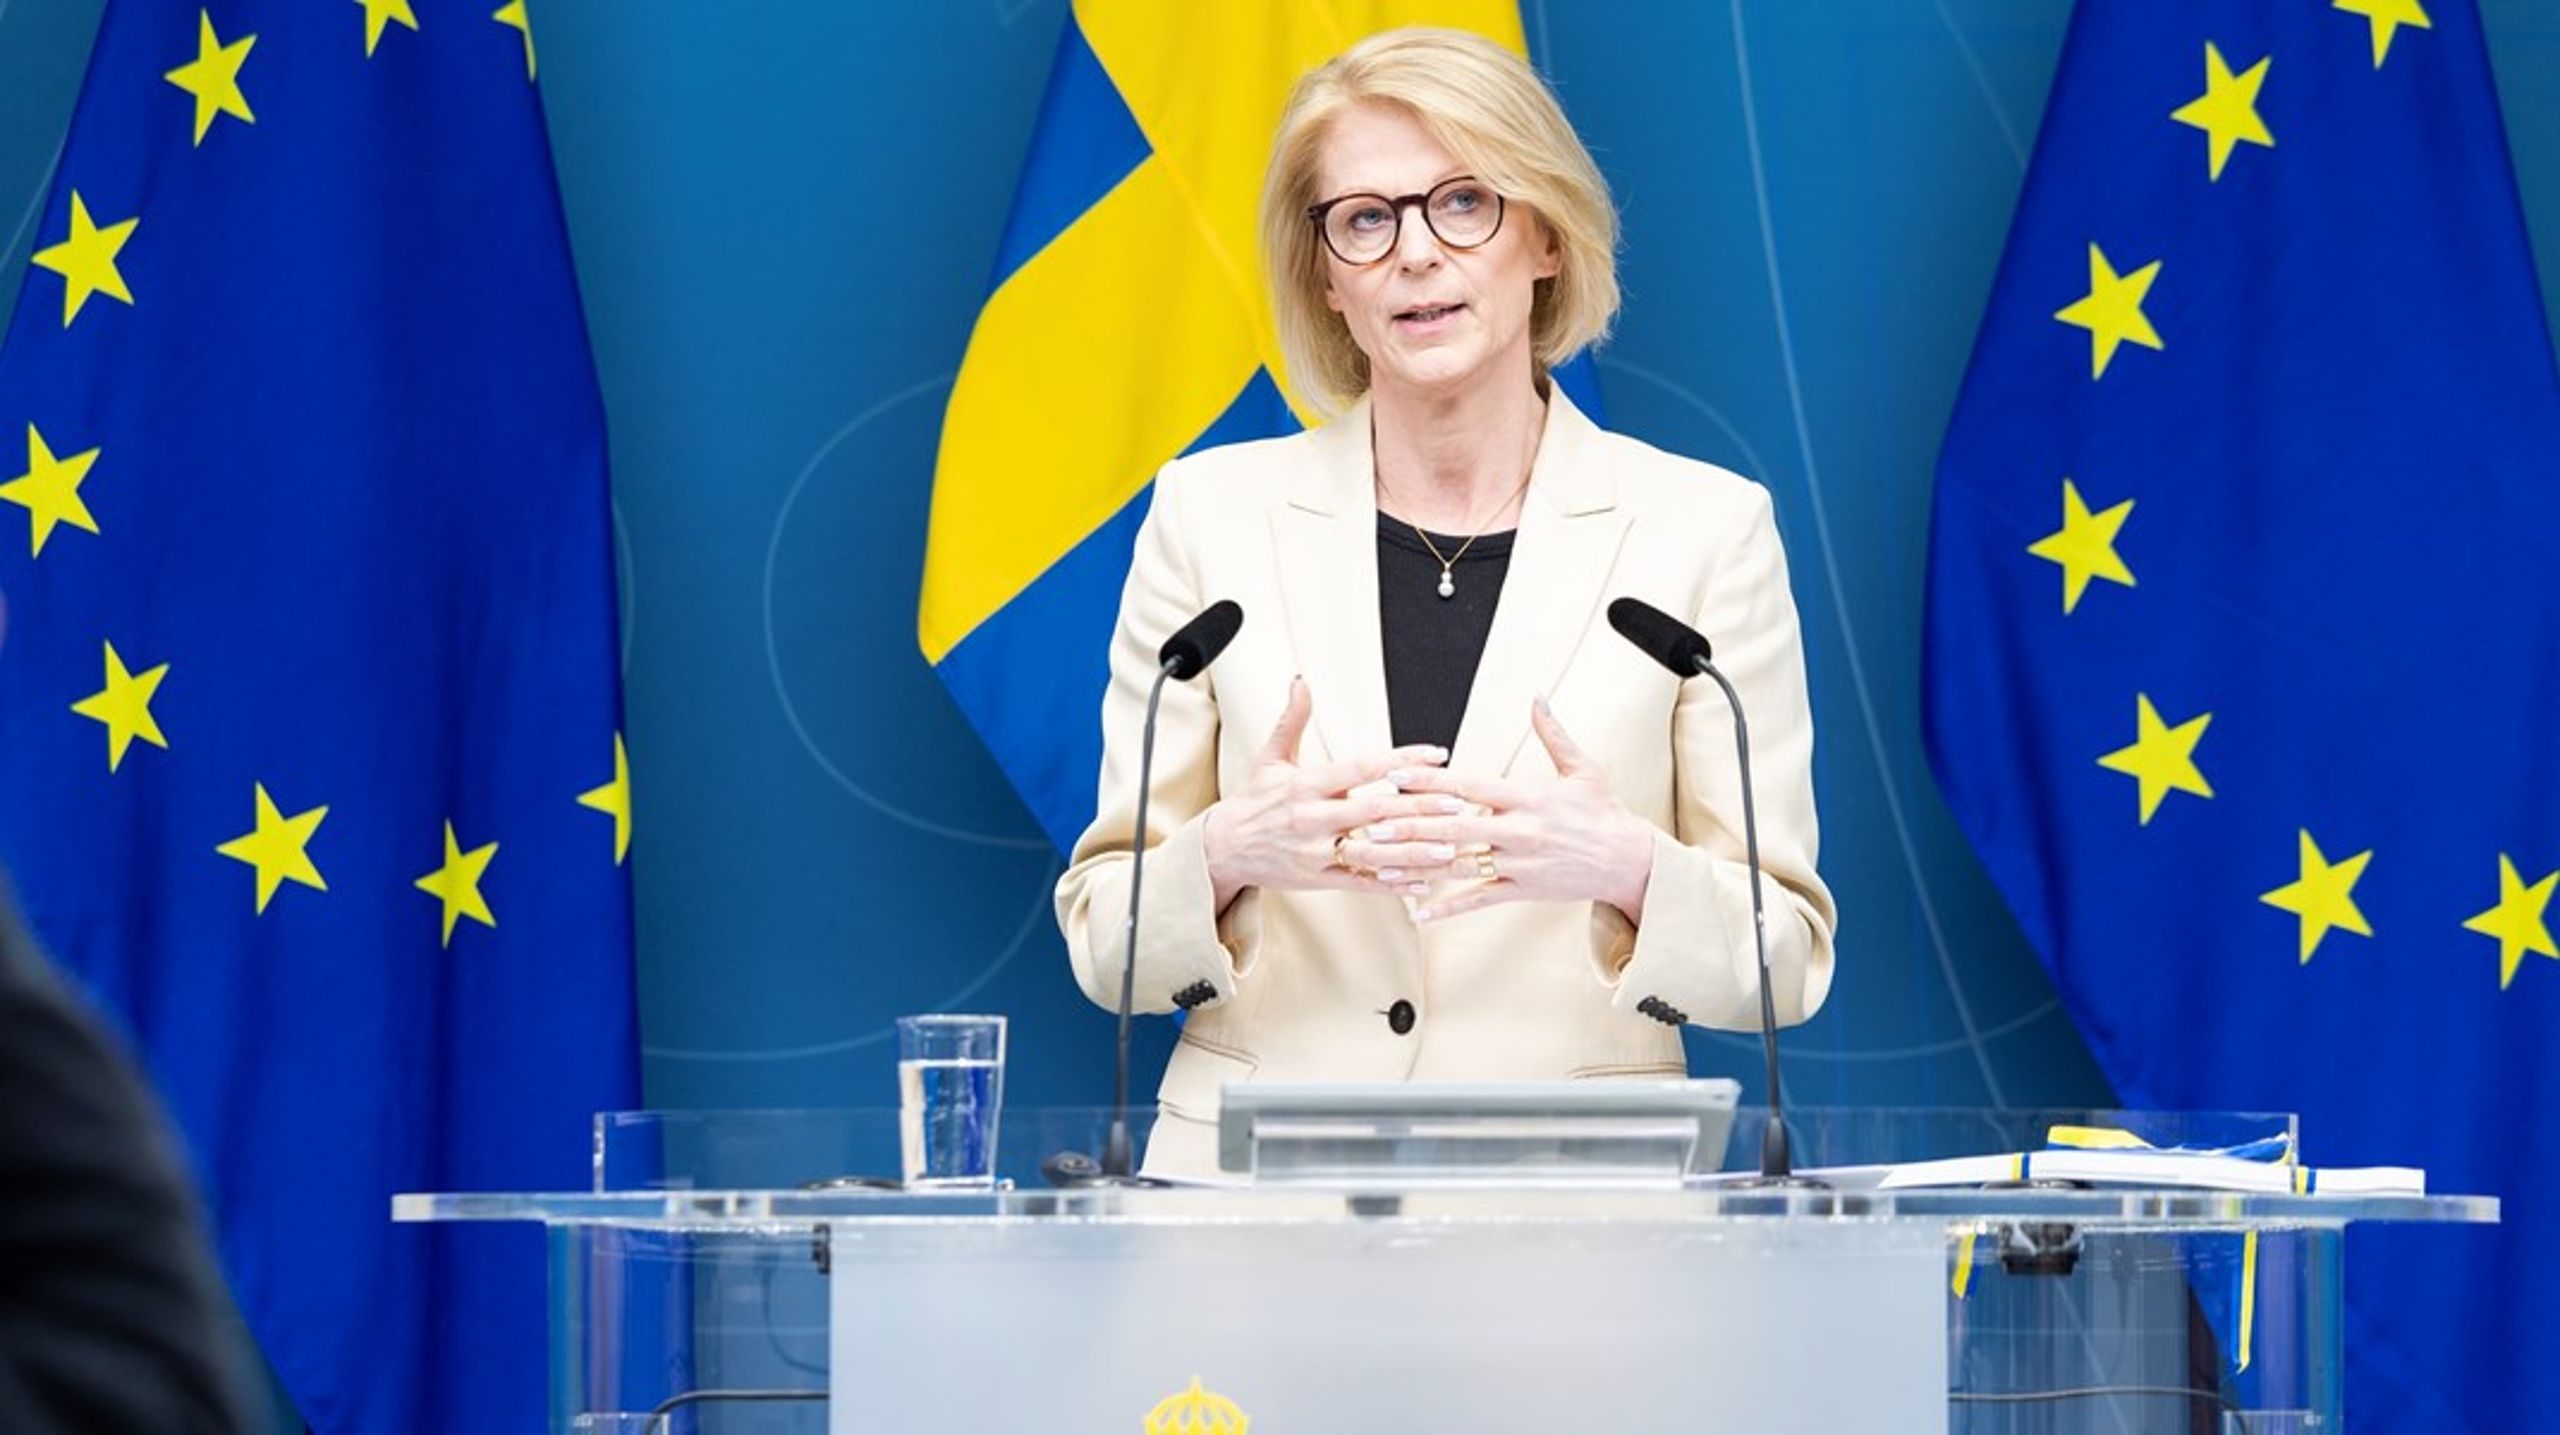 Att finansminister Elisabeth Svantesson dröjer med besked om höjda statsbidrag gör det svårt&nbsp; att lägga budget, enligt flera regionpolitiker.